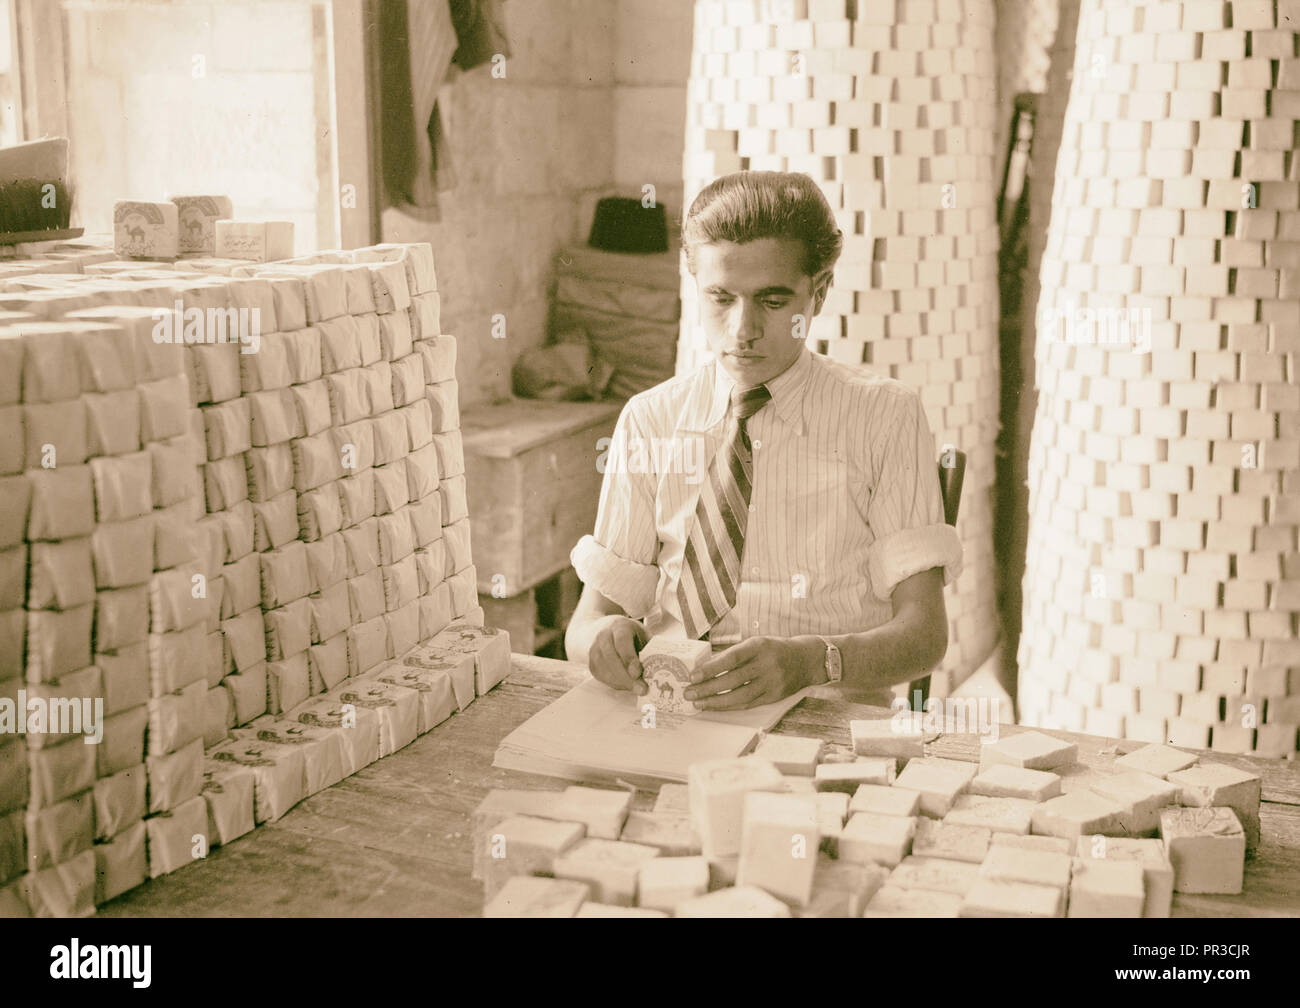 Arabische Fabriken und allgemeine Verbesserungen in Nablus, die Soap Factory. Verpackung Seife. 1940, West Bank, Nablus, Naher Osten Stockfoto